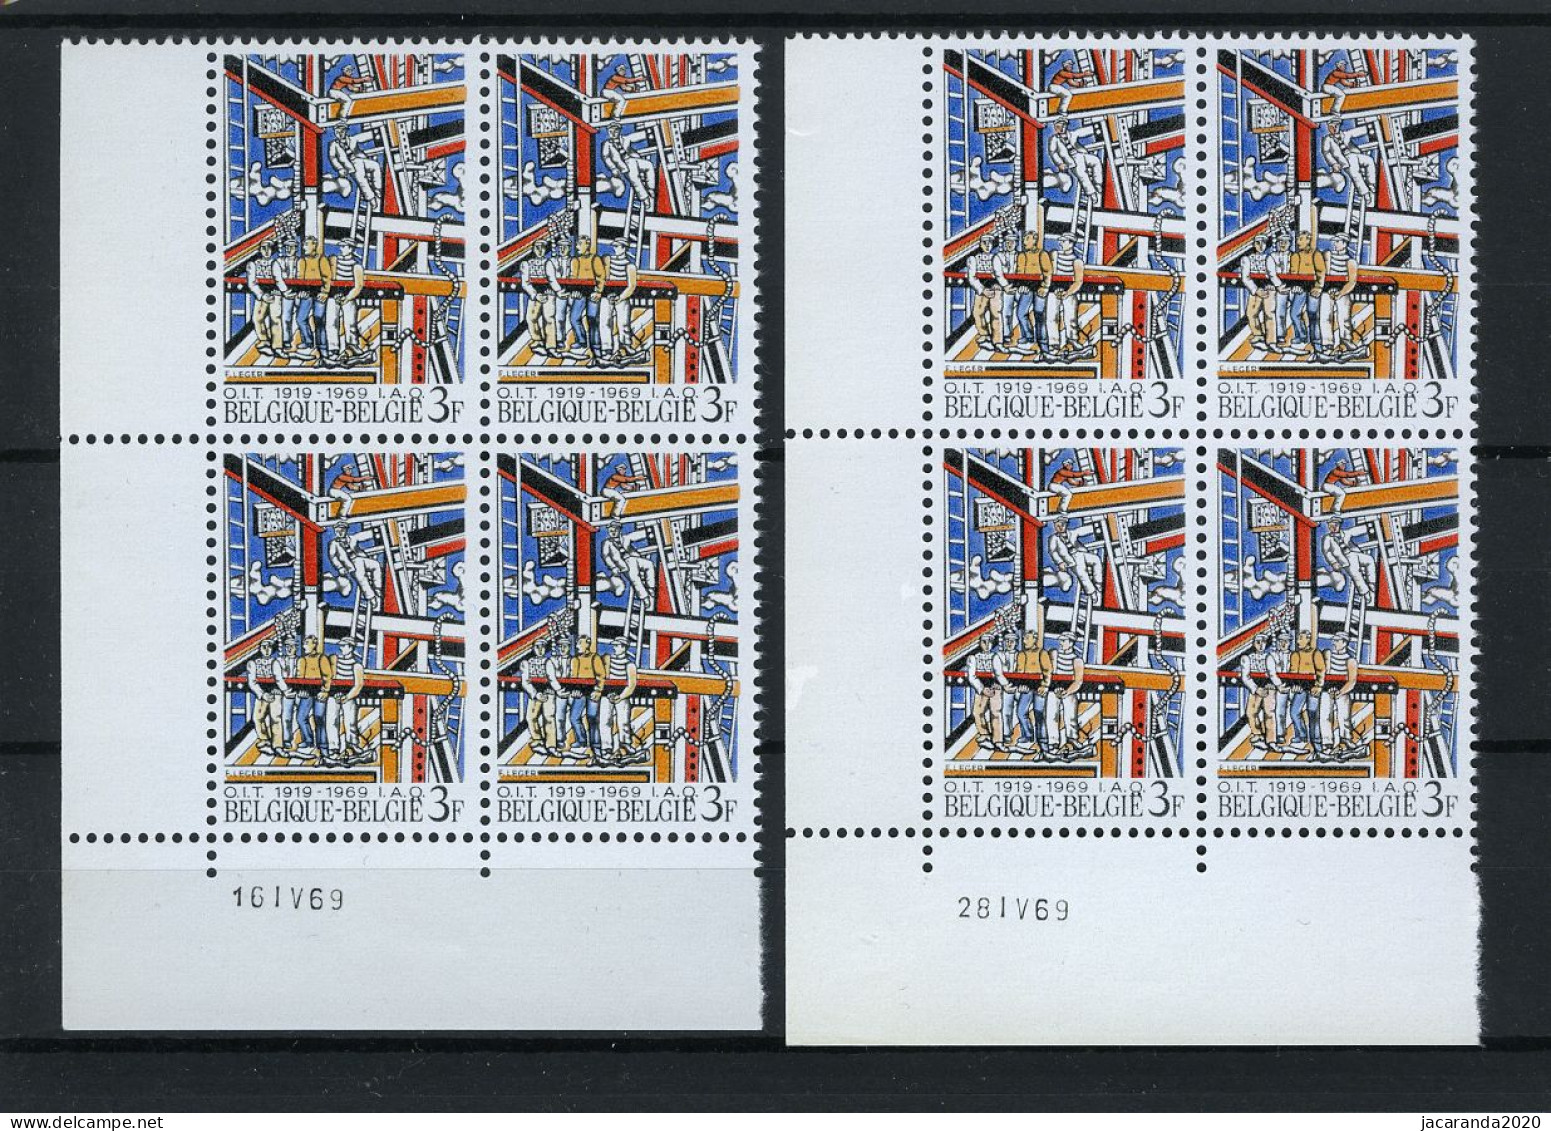 België 1497 - 50 Jaar I.A.O. - Fernand Léger - 16 IV 69 En 28 IV 69 - Datiert